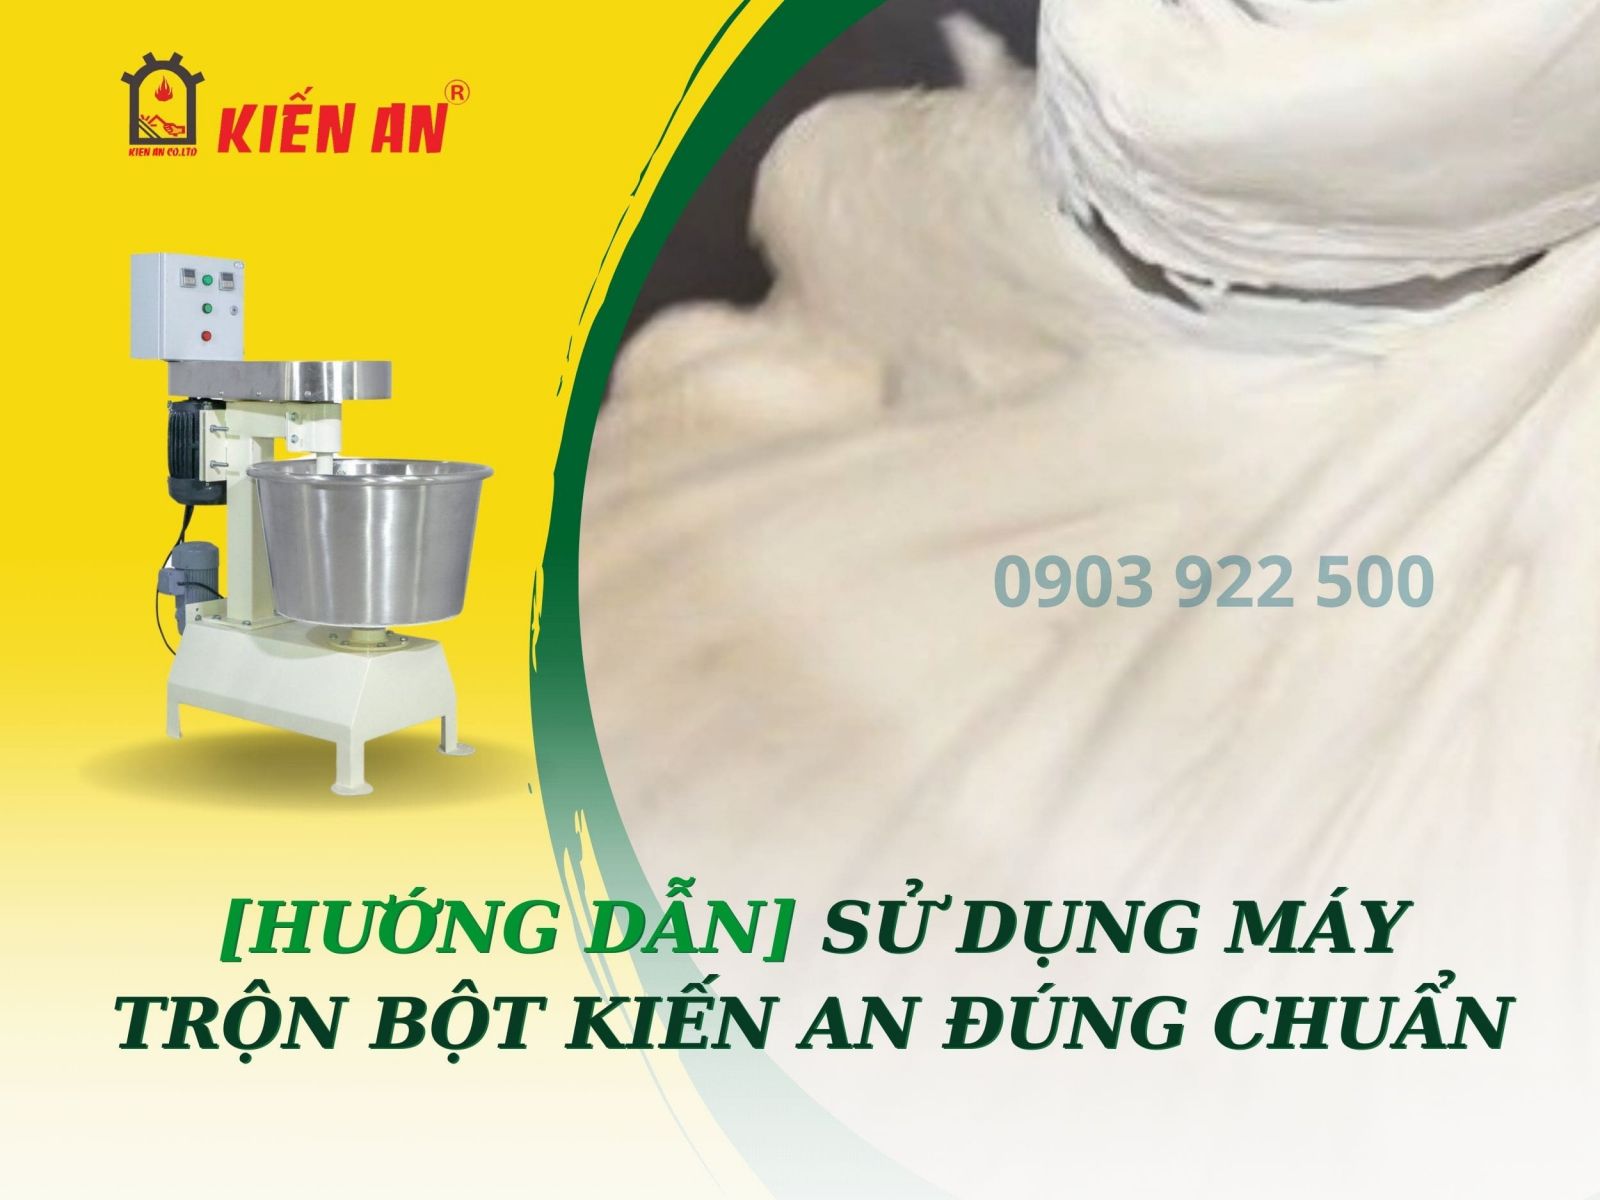 Huong-dan-su-dung-may-tron-bot-kien-an-tang-tuoi-tho-may